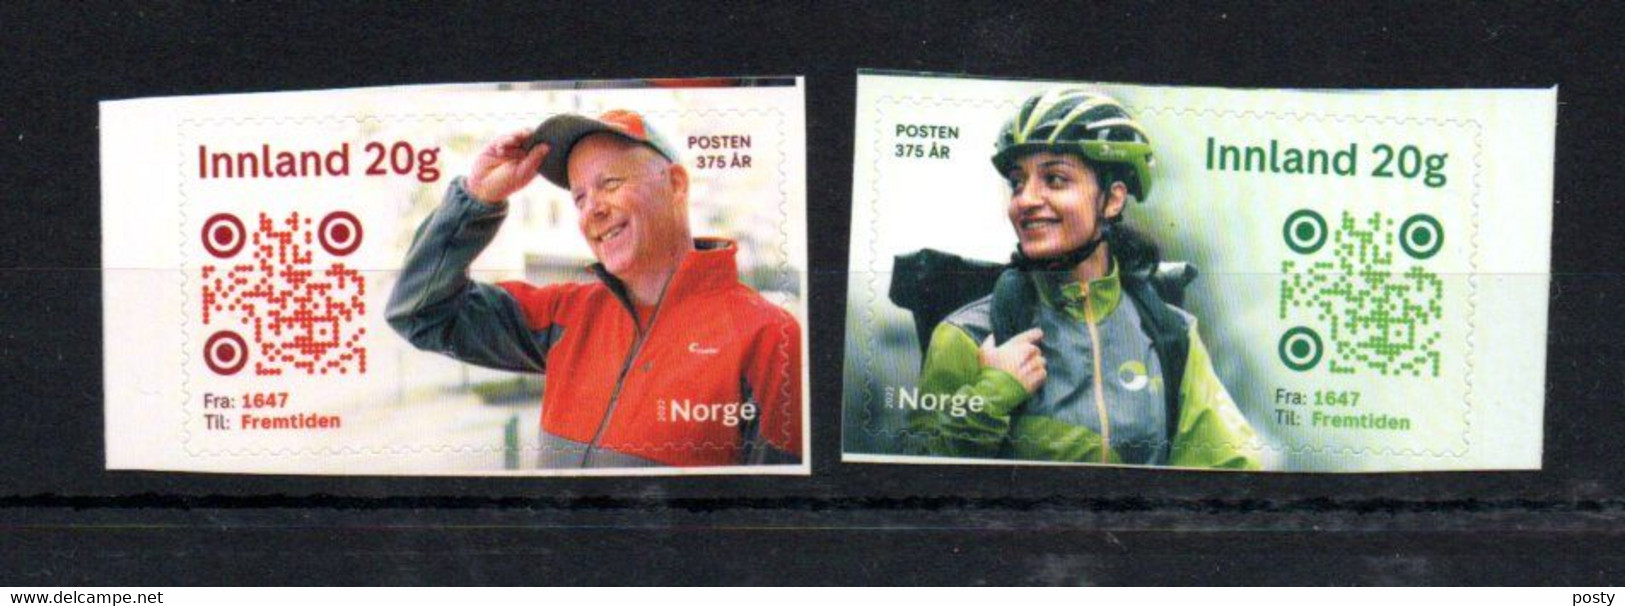 NORVEGE - NORWAY - 2022 - FACTEUR - MAILMAN - 375éme ANNIVERSAIRE - 375th ANNIVERSARY - - Nuovi